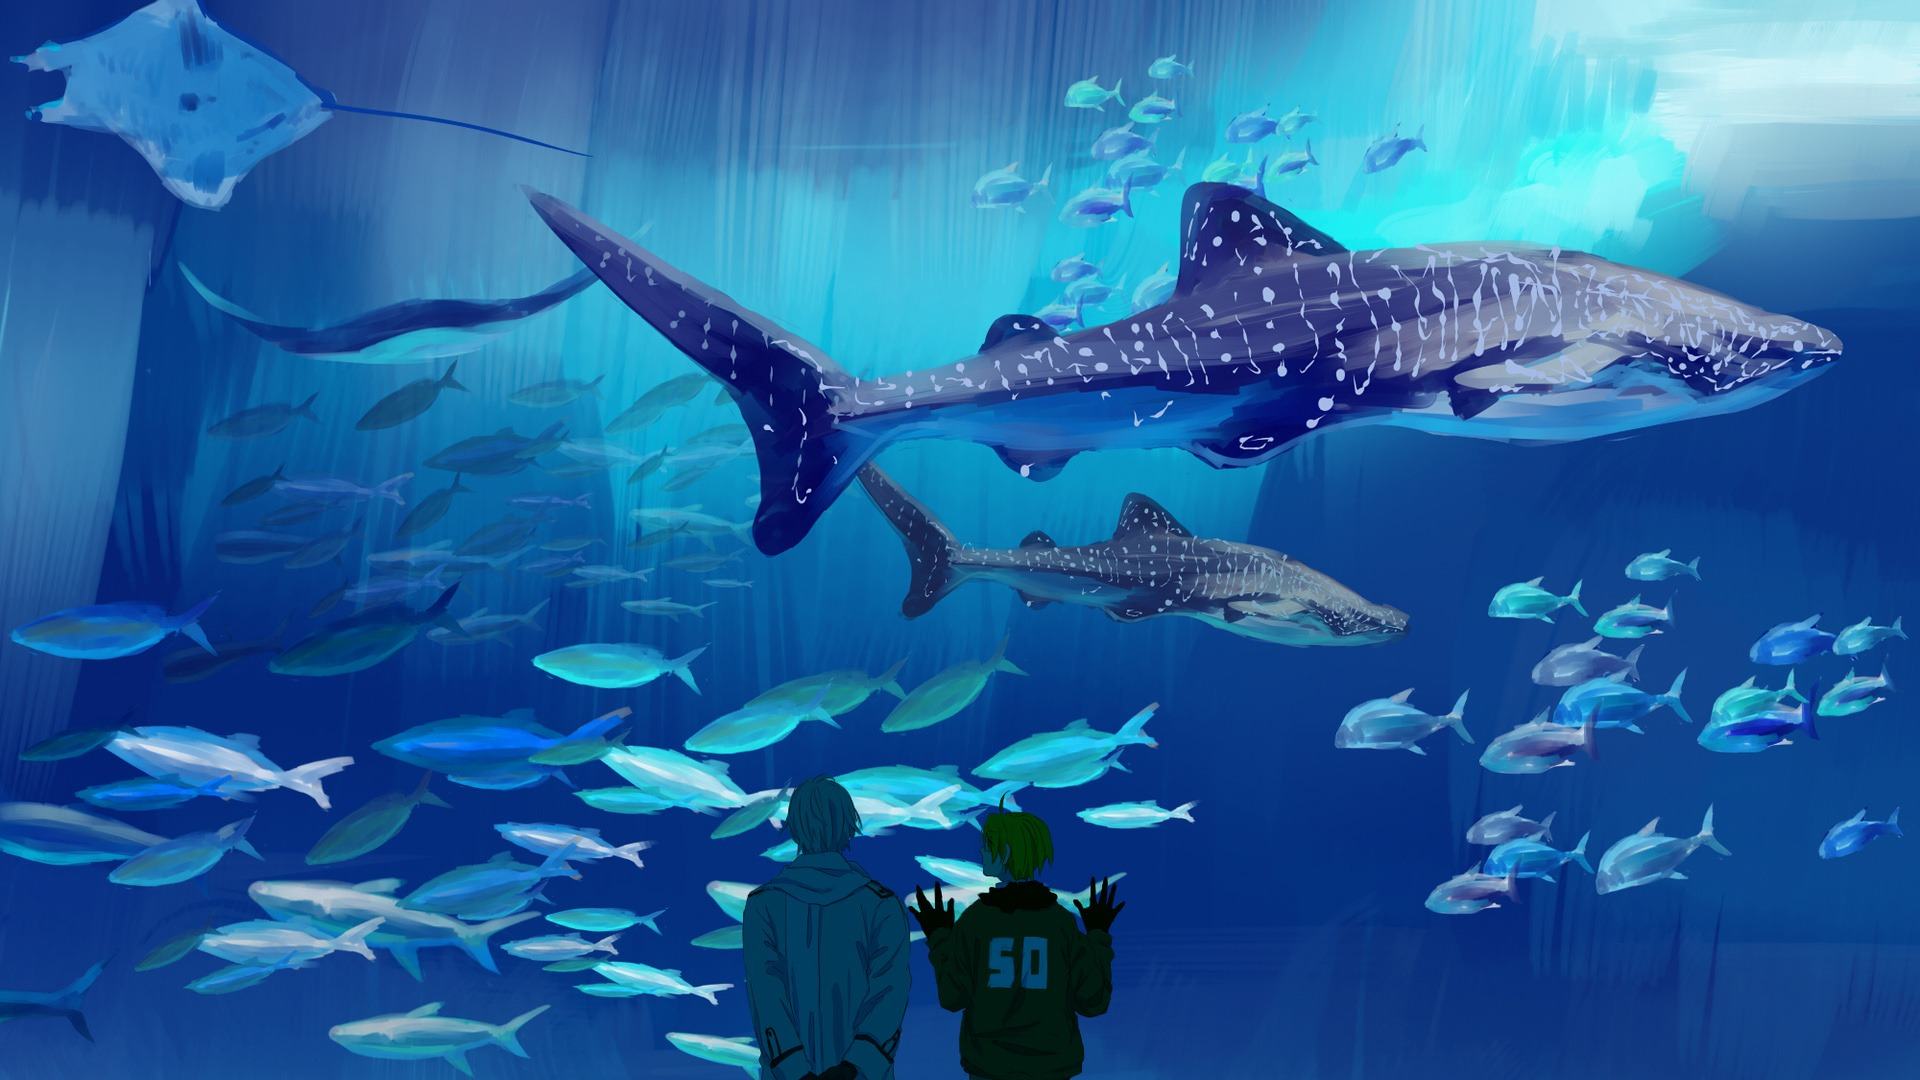 Hd Wallpaper Aquarium 1080p - HD Wallpaper 